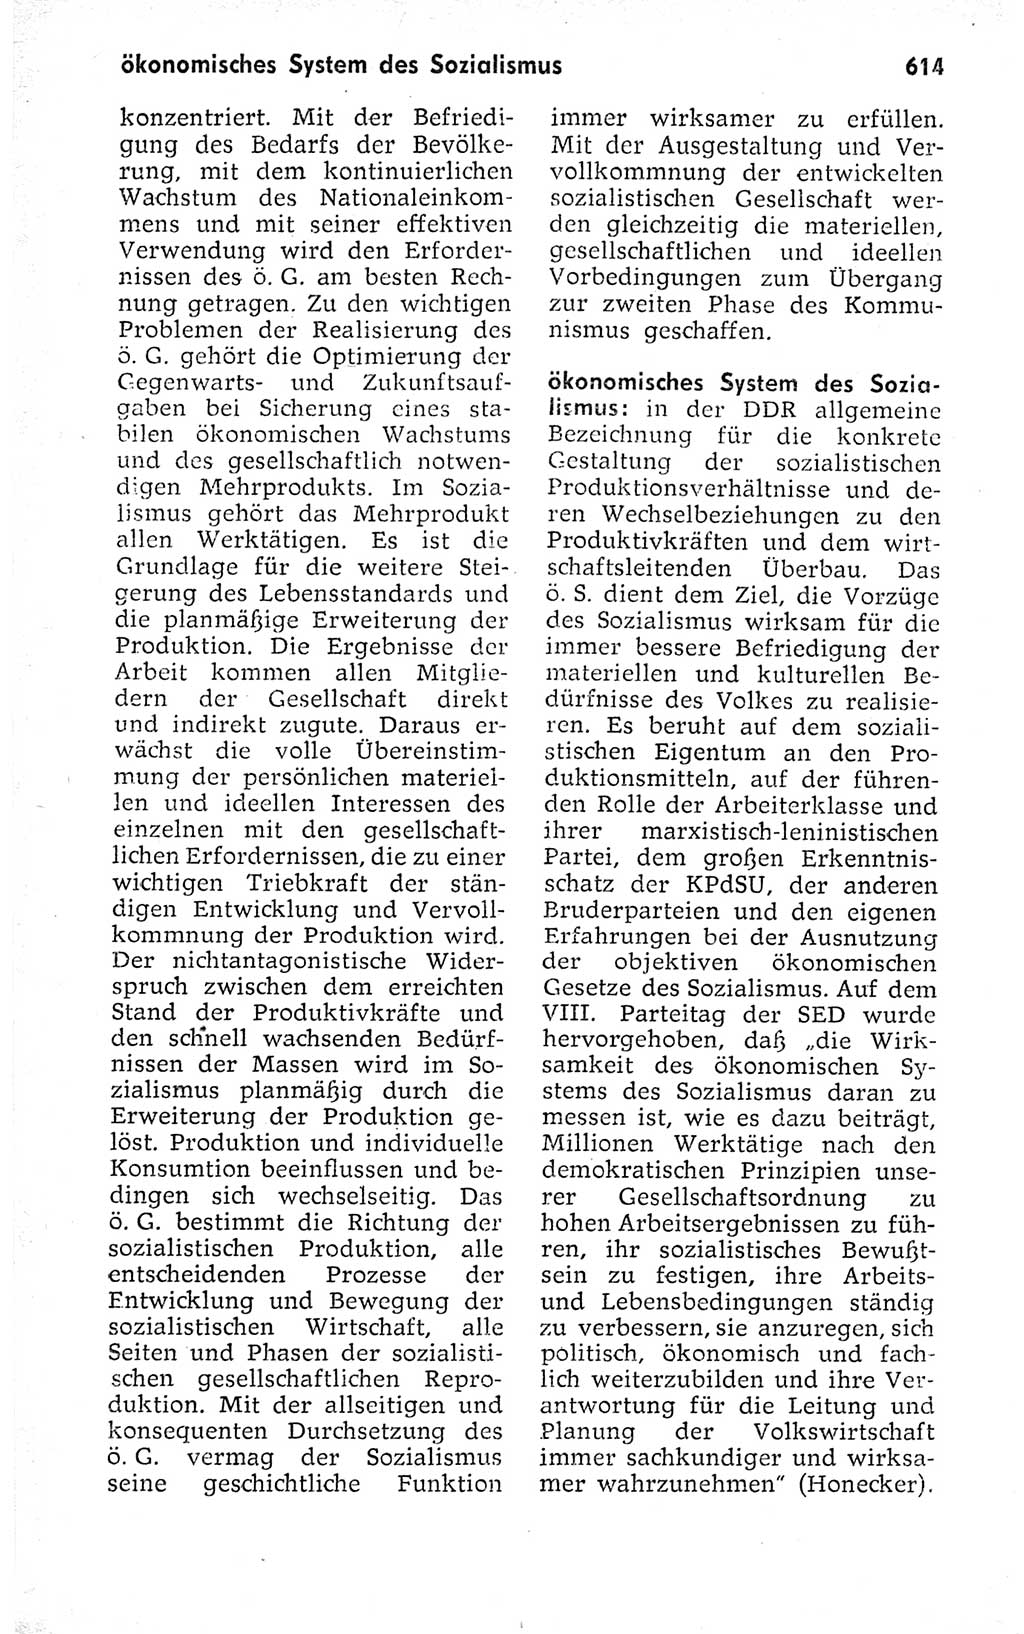 Kleines politisches Wörterbuch [Deutsche Demokratische Republik (DDR)] 1973, Seite 614 (Kl. pol. Wb. DDR 1973, S. 614)